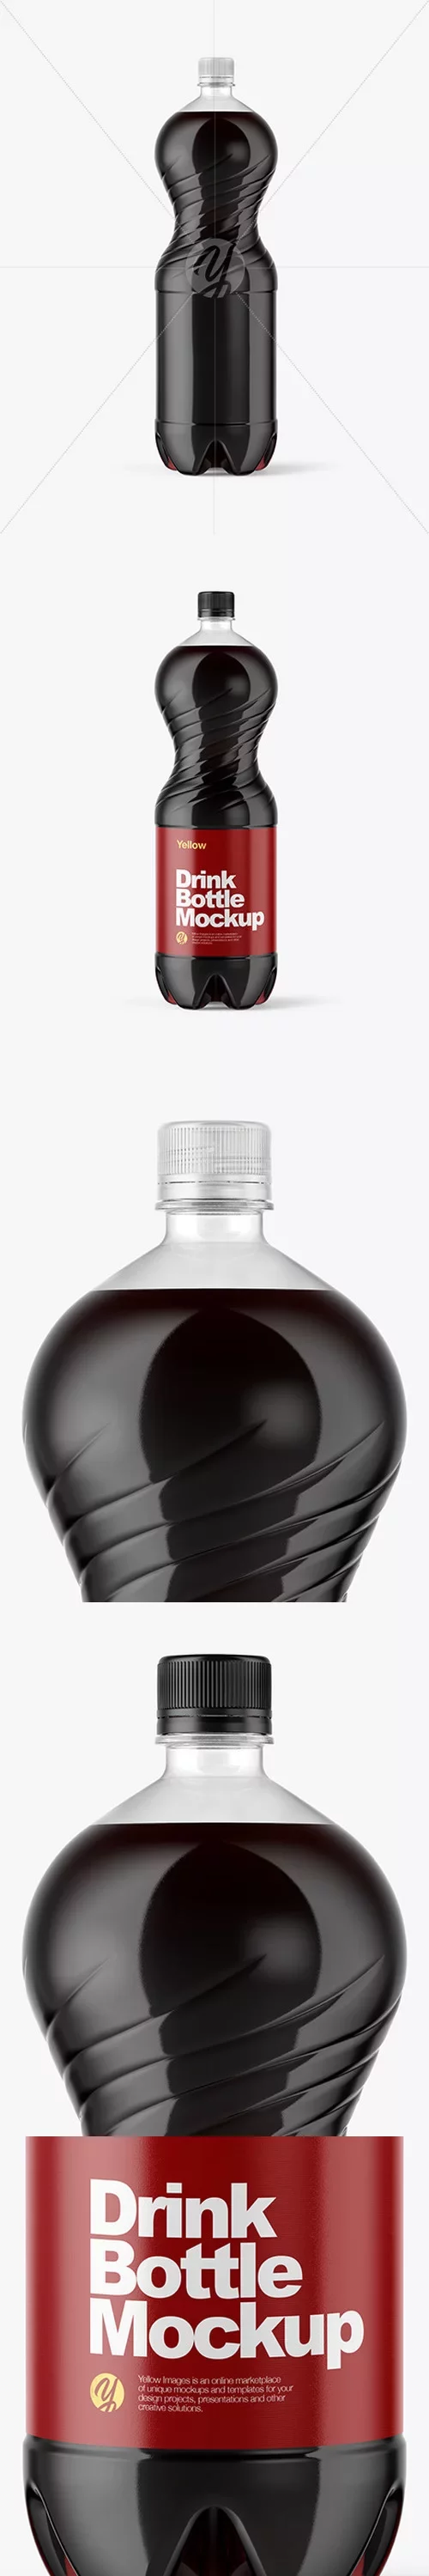 2L PET Bottle With Cola Mockup 47451